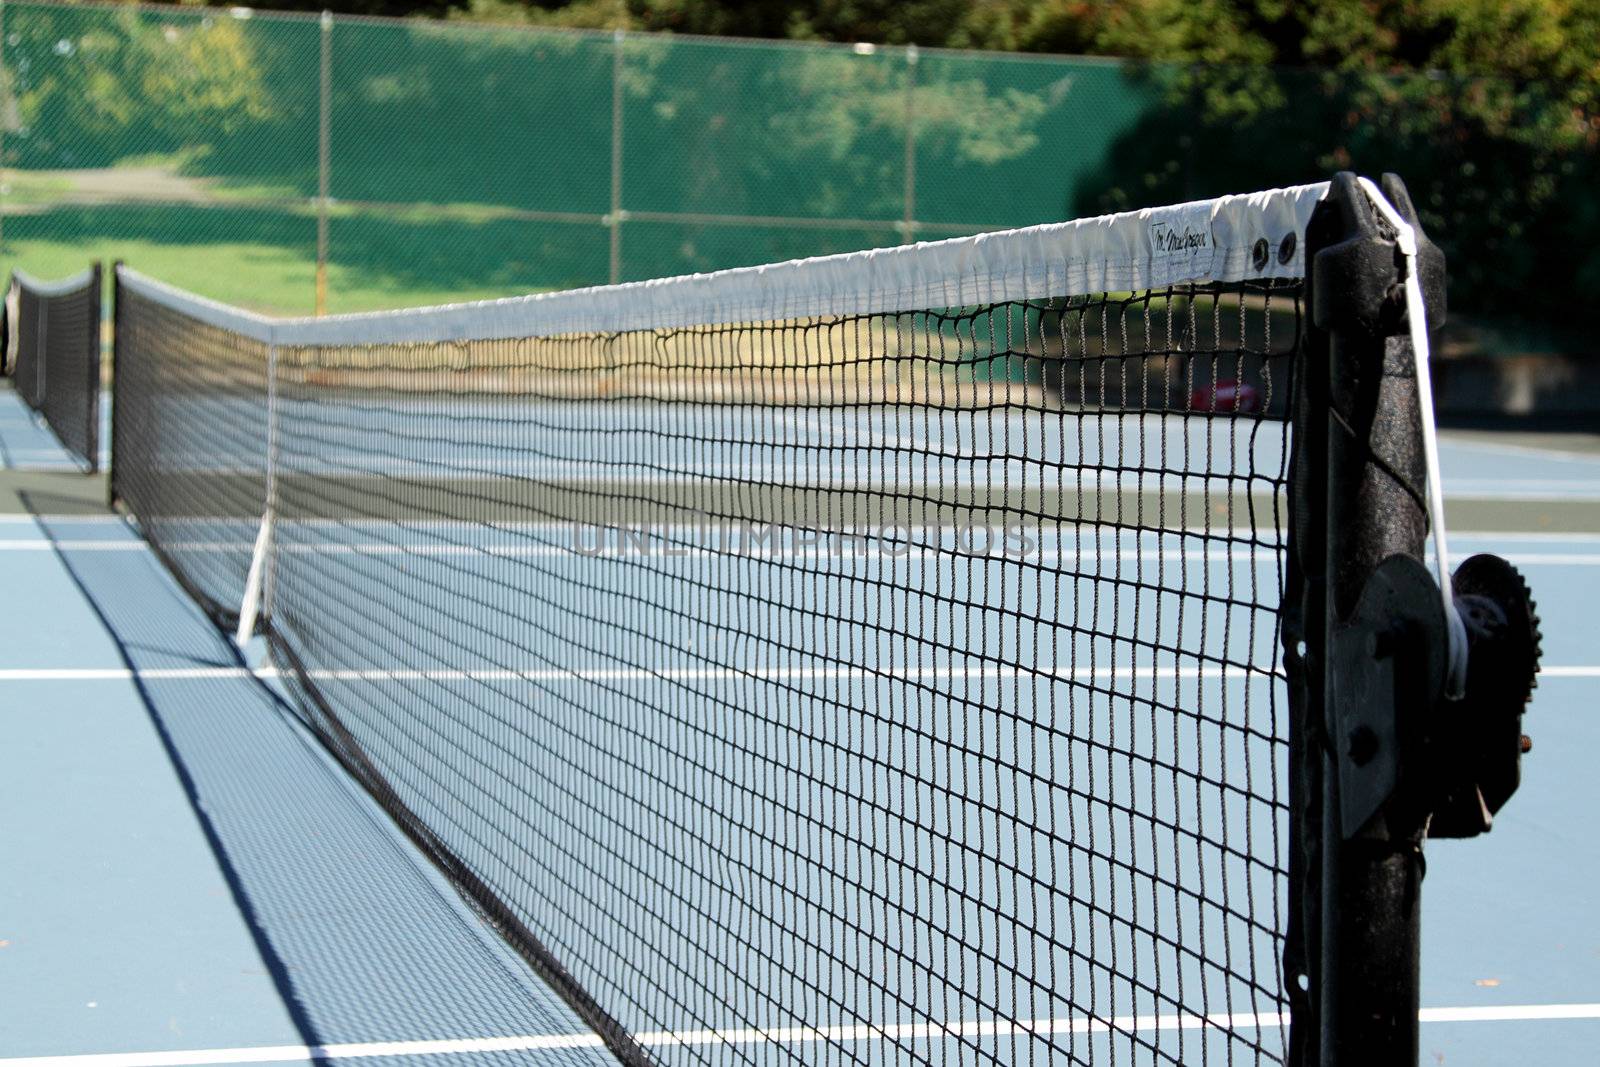 Tennis net by pulen